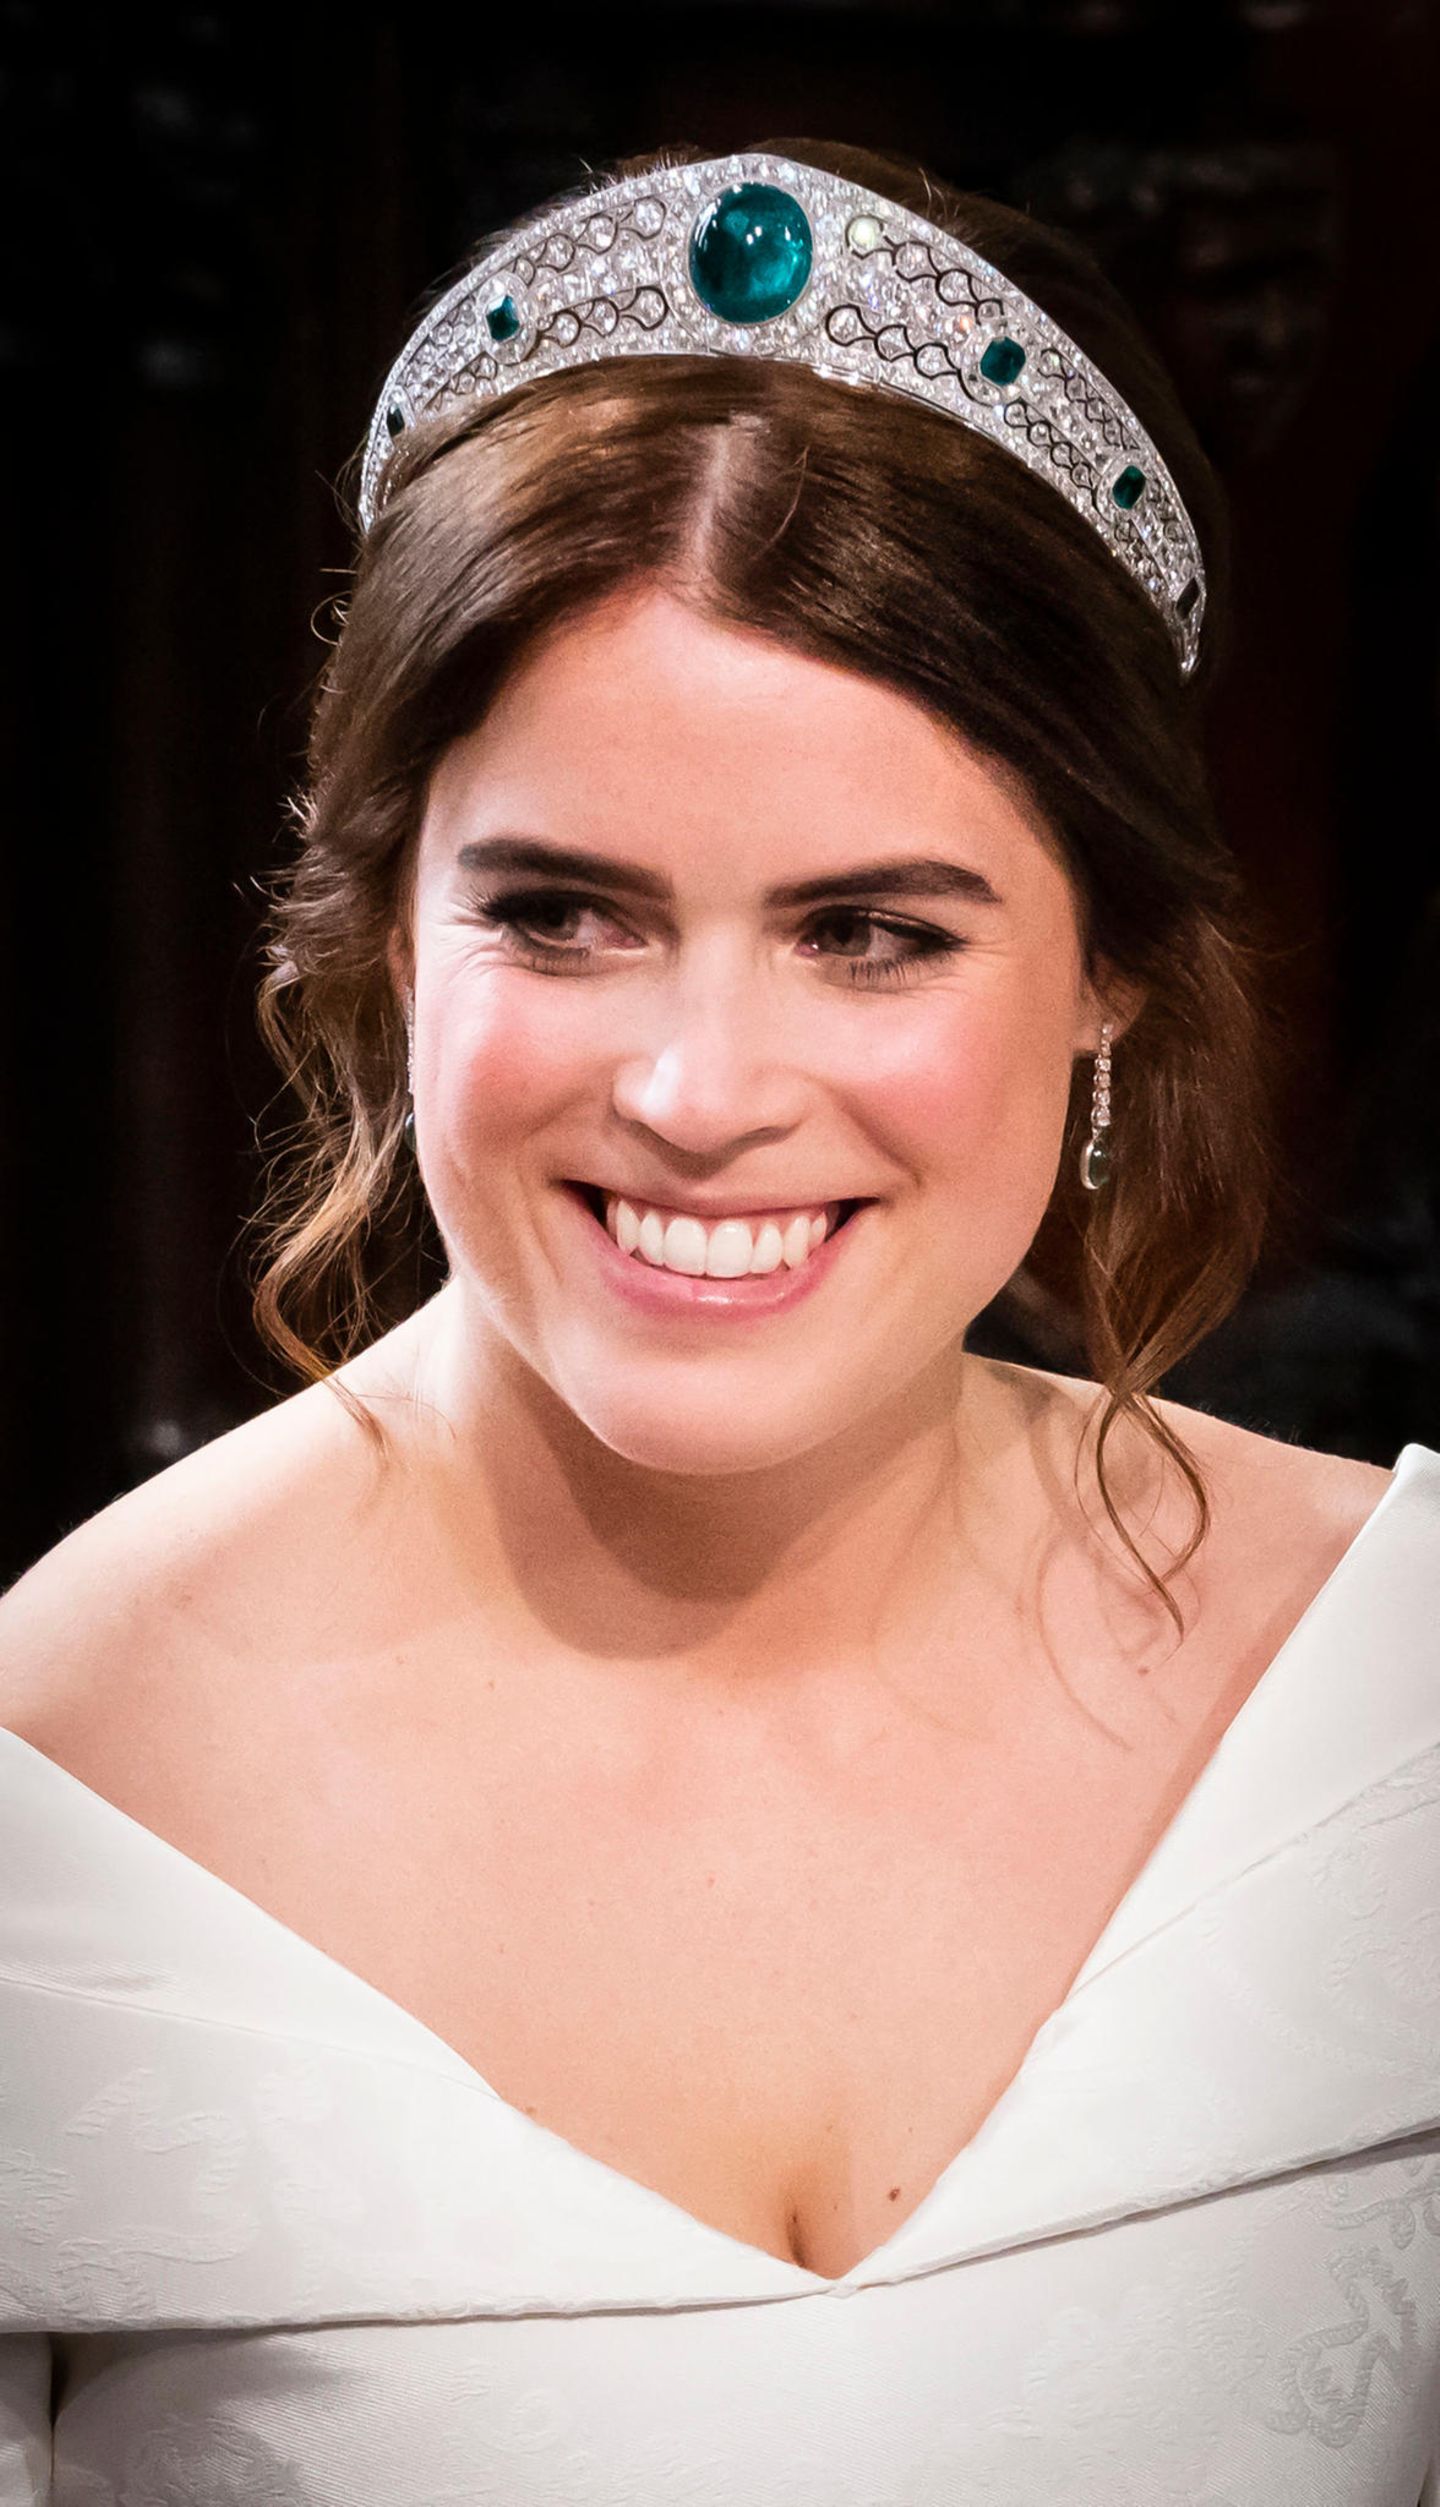 Zweite Hochzeitskleider: Prinzessin Eugenie lächelt